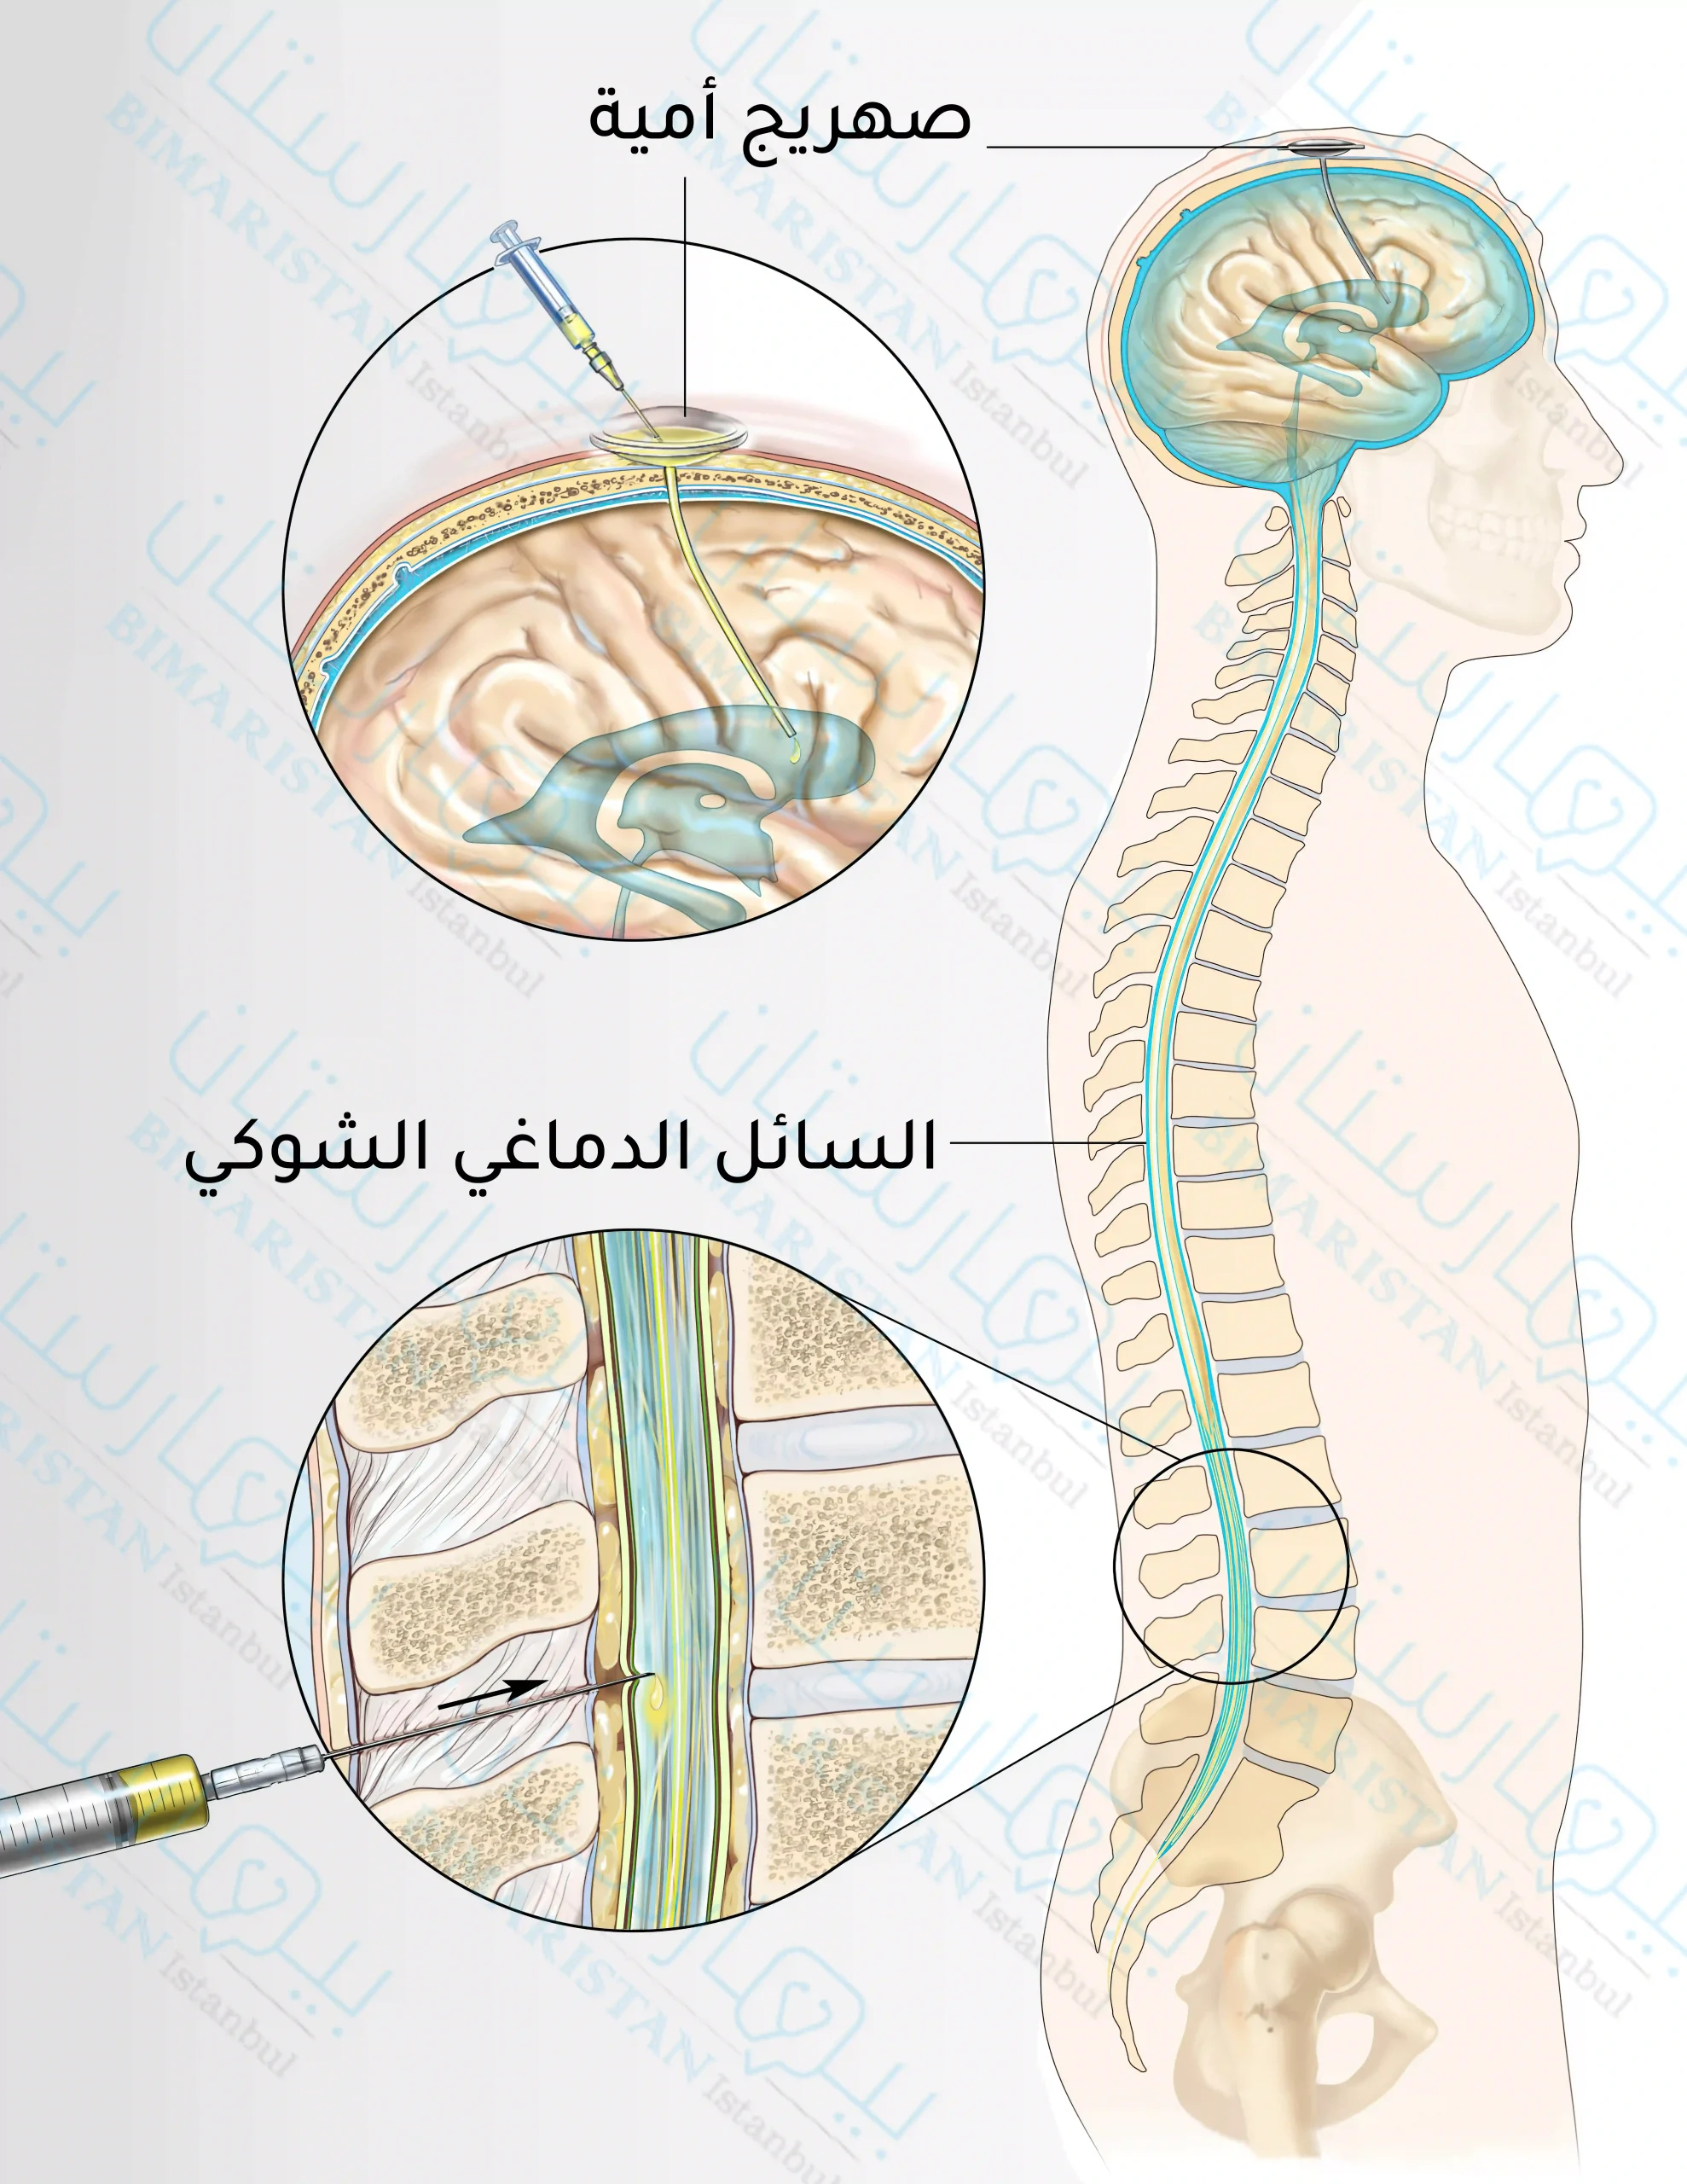 Kemoterapi ilaçlarının spinal kanala veya subaraknoid boşluğa intratekal enjeksiyonu (Ommaya Rezervuarı beyin omurilik sıvısının drene olduğu alandır).